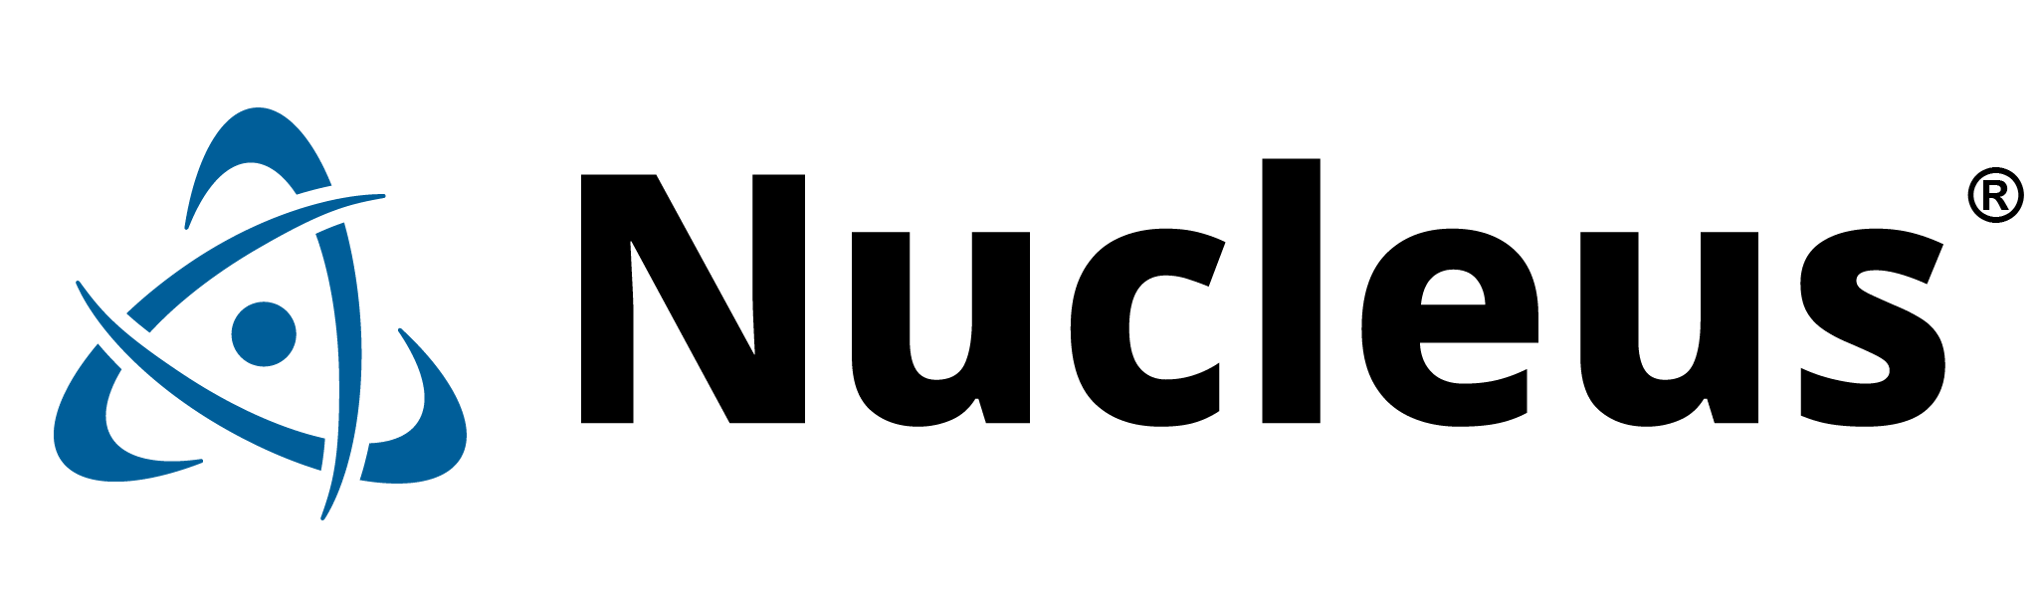 nucleus-logo-header_logo